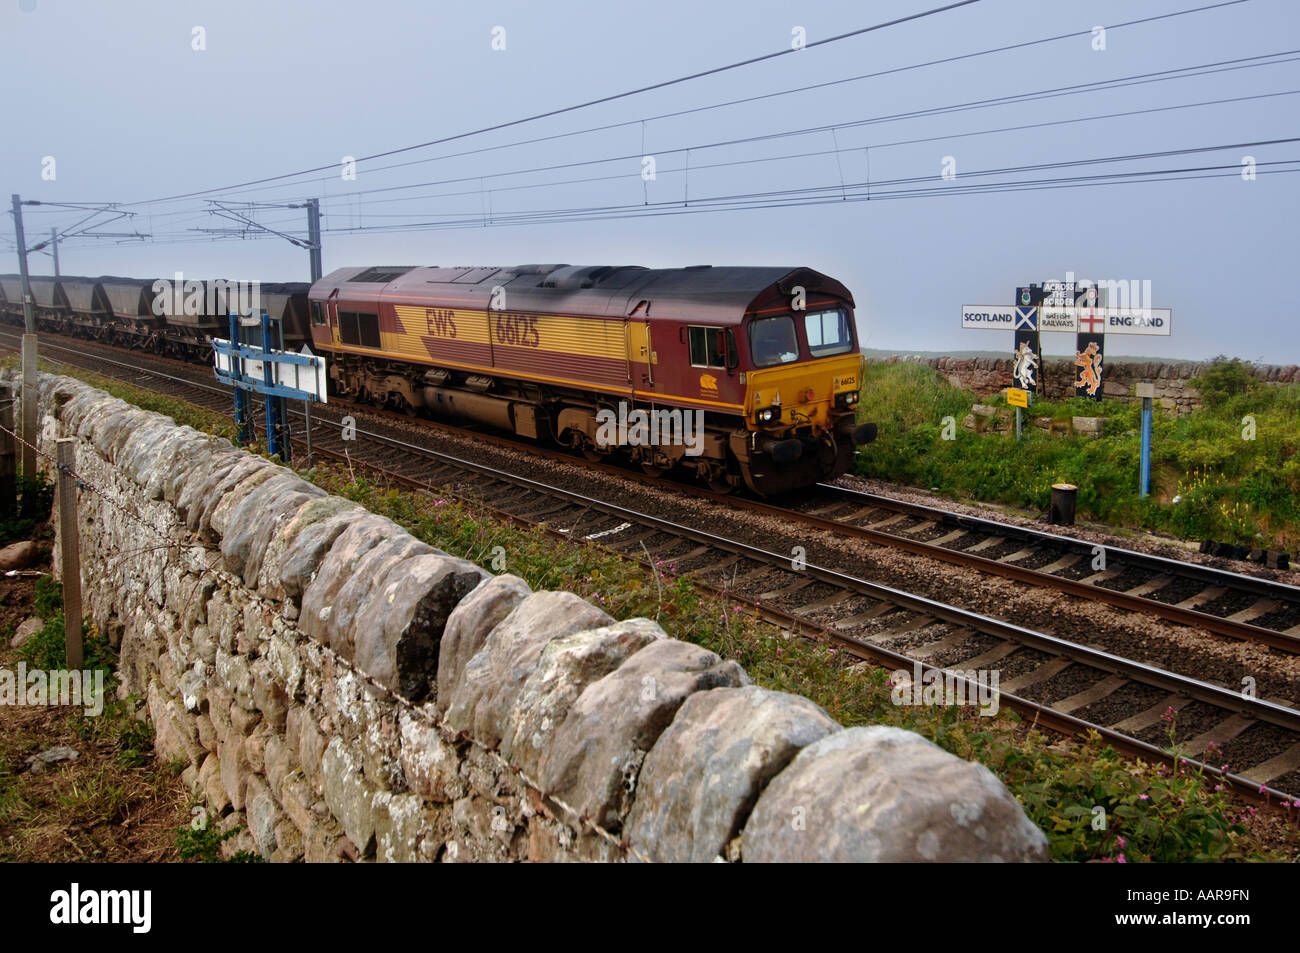 Un EWS freight attraversa il confine dalla Scozia in Inghilterra su un treno di carbone passando un vecchio British Railways segno con bandiere Foto Stock